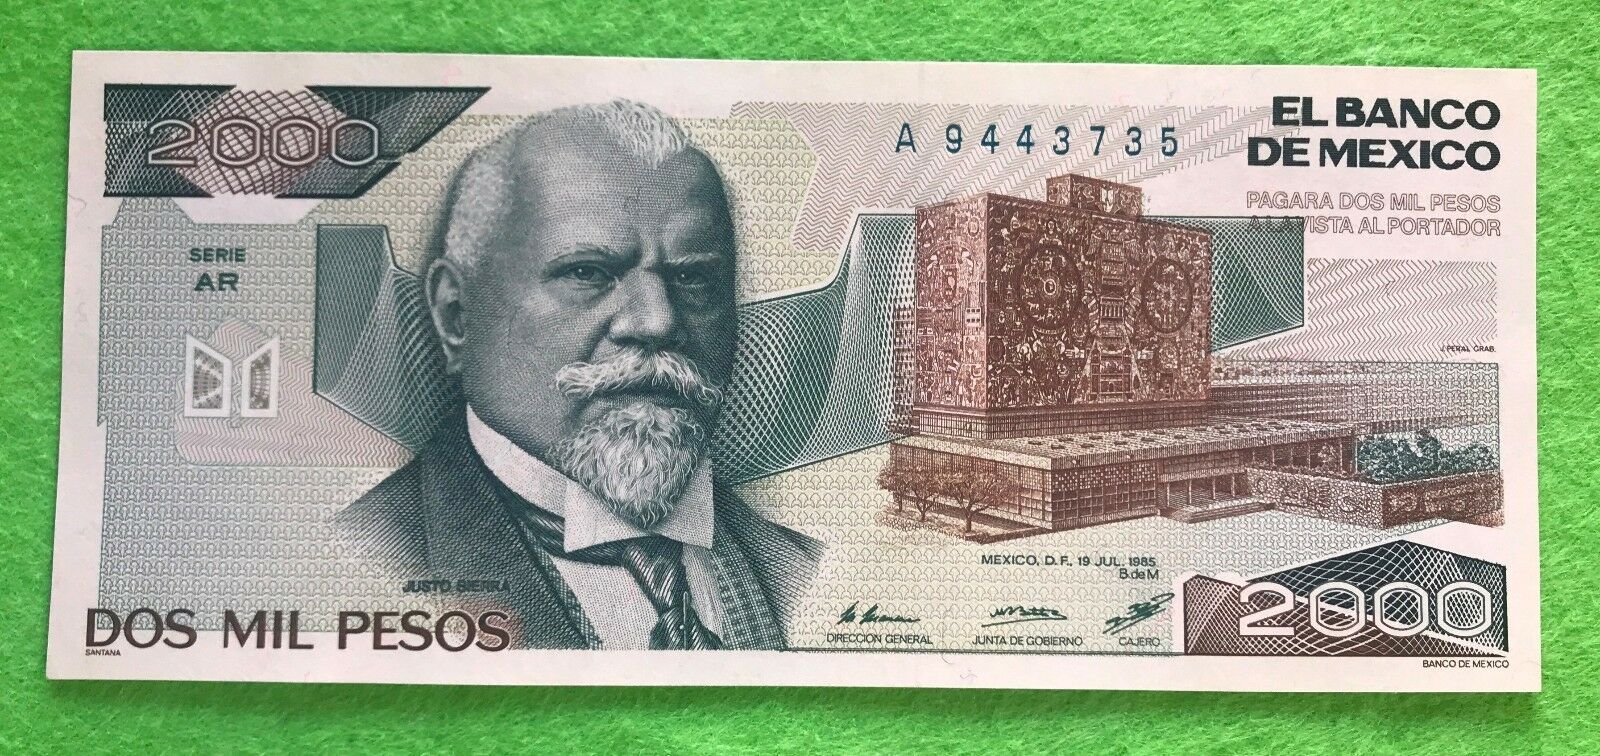 Mexico Banknote 2000 Pesos Au Unc Paper Money - Mexican Bills Dos Mil Pesos Rare